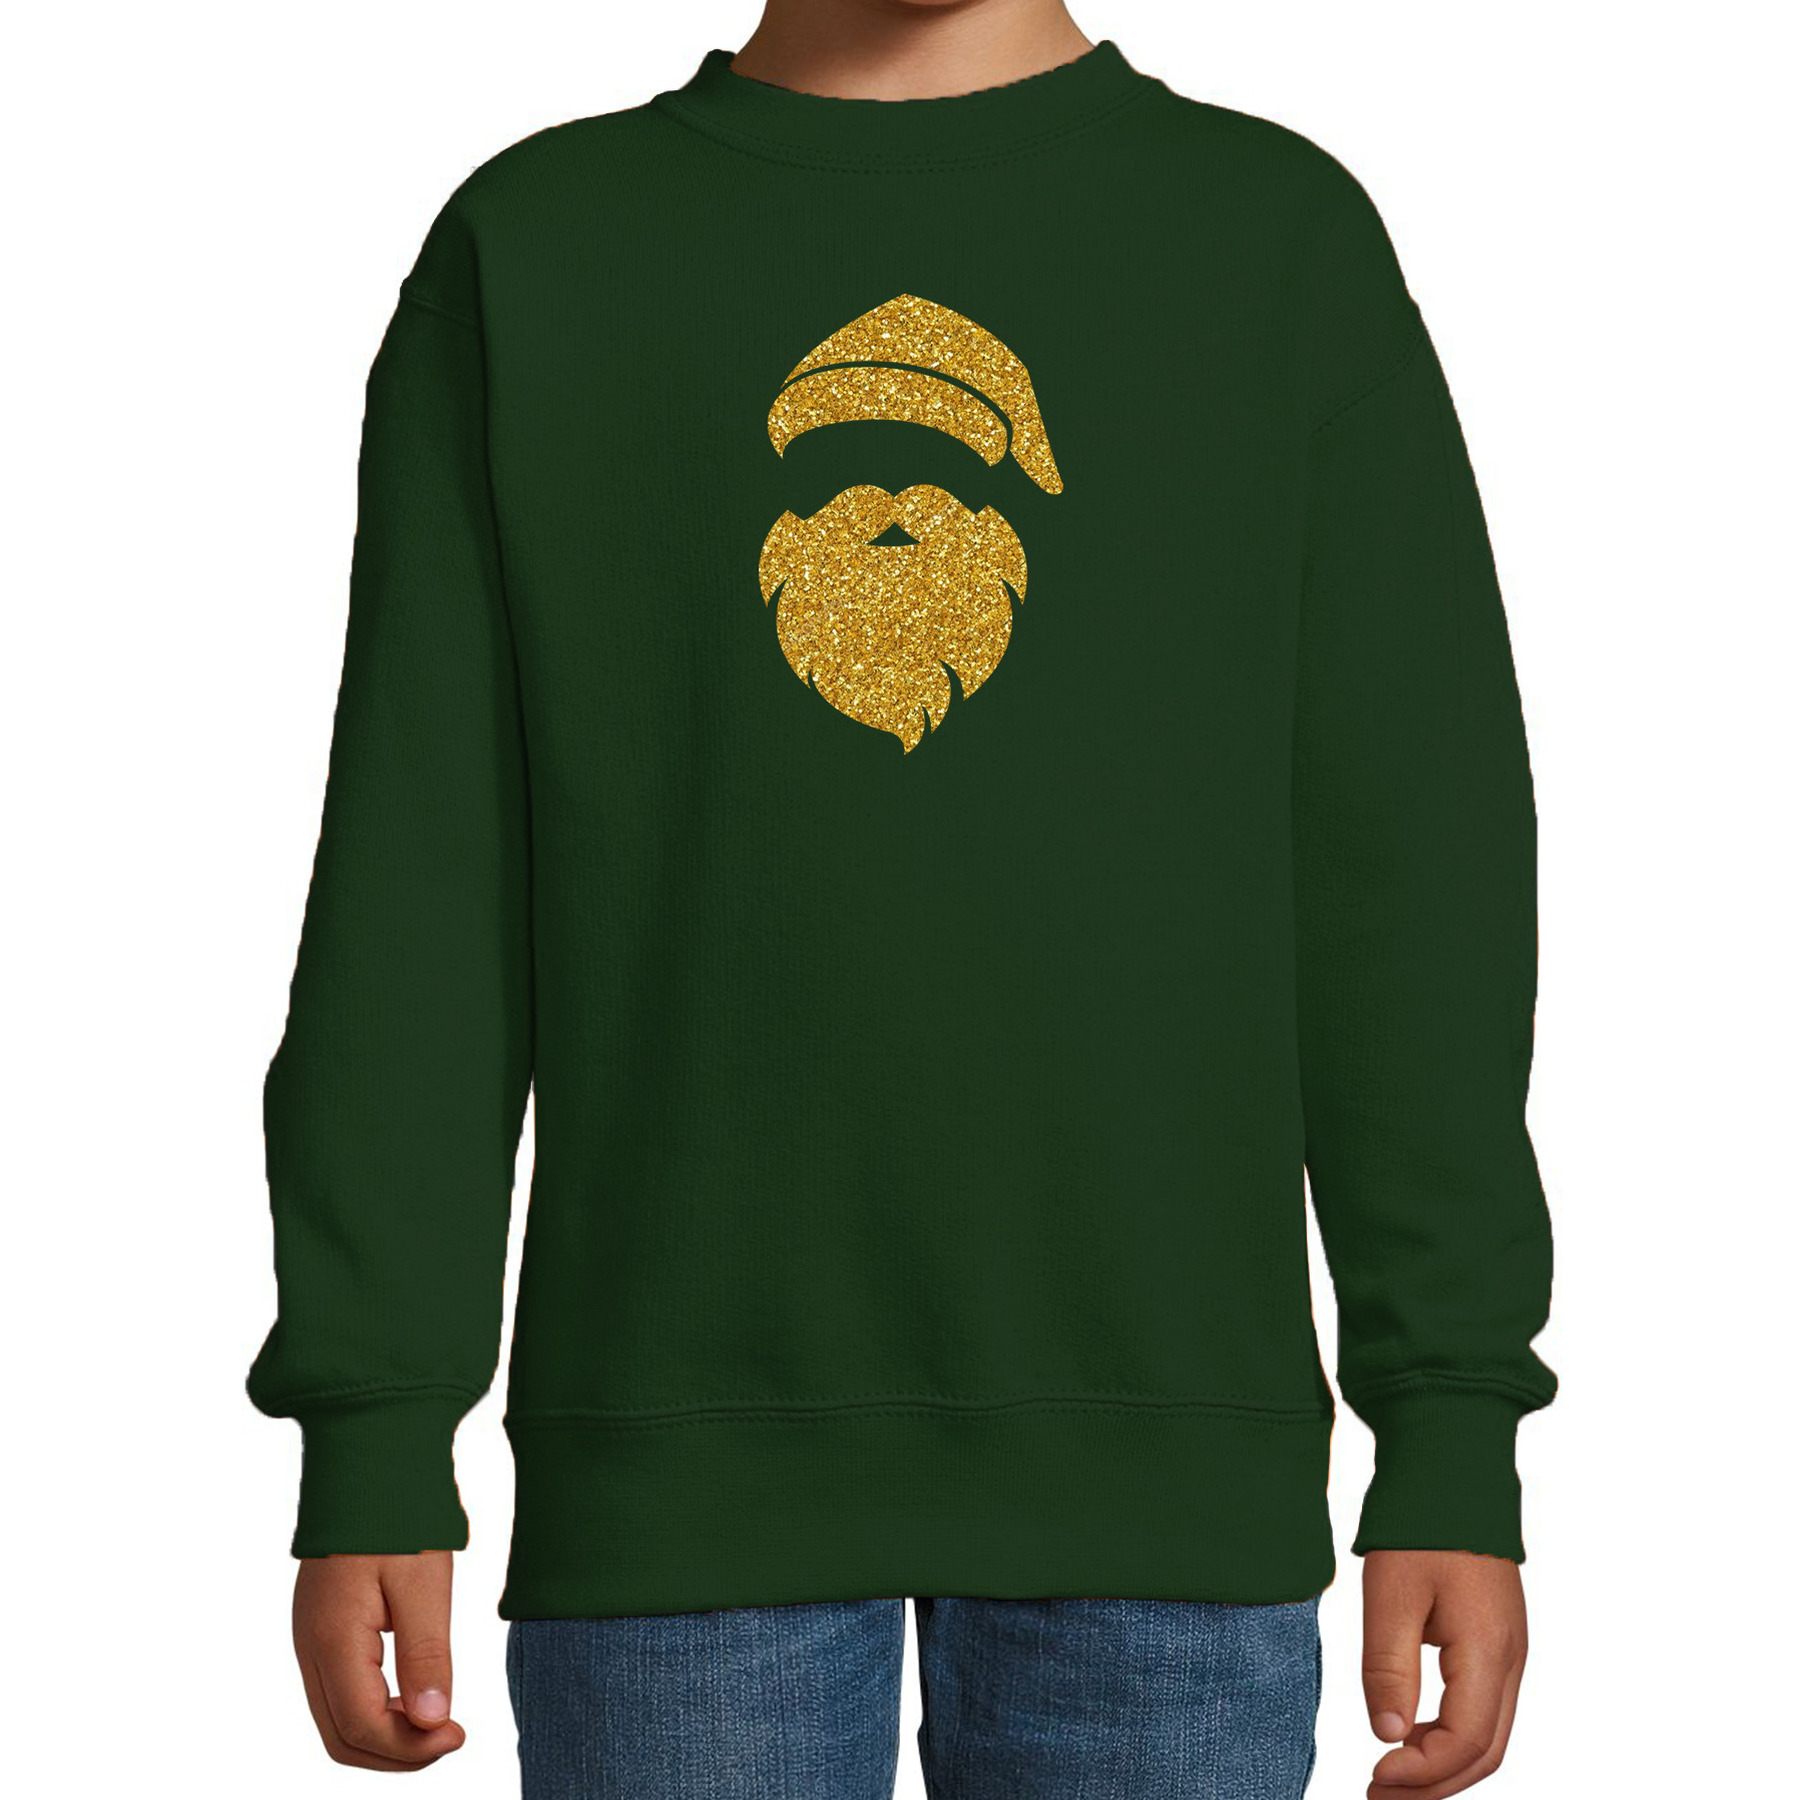 Kerstman hoofd Kerstsweater-Kersttrui groen voor kinderen met gouden glitter bedrukking